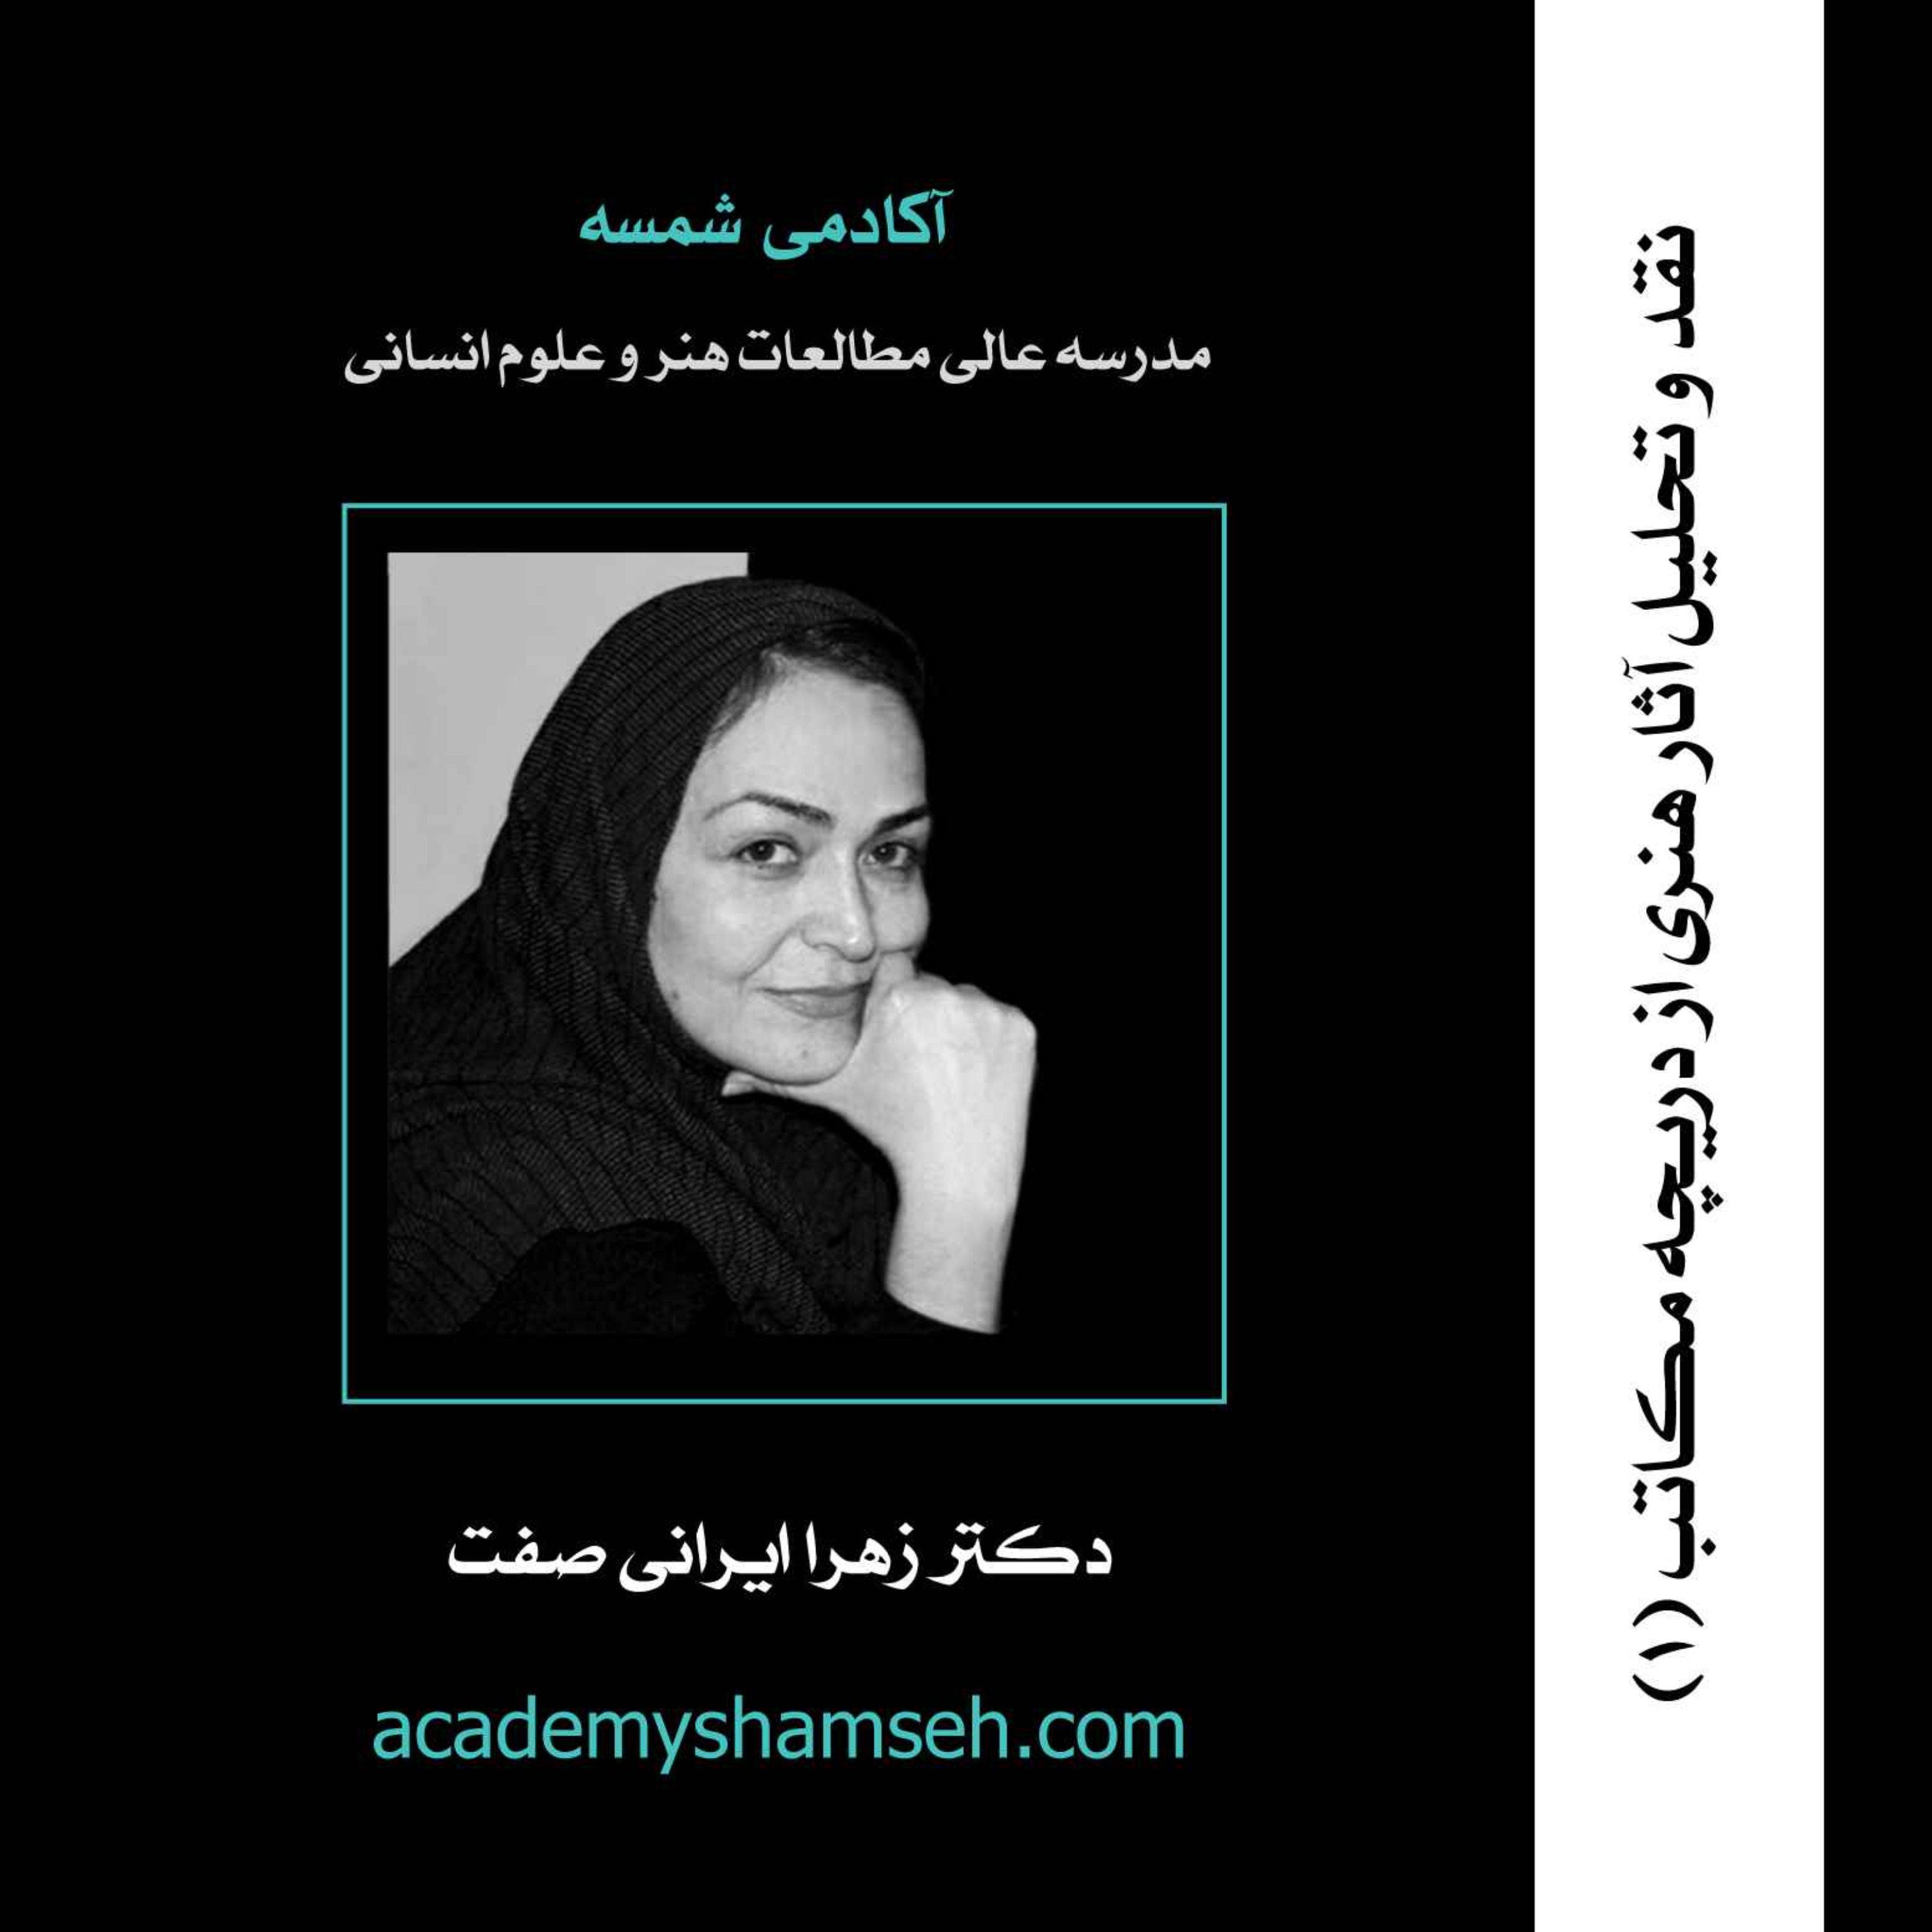 نقد و تحلیل آثار هنری از دریچه مکاتب (1) | دکتر زهرا ایرانی صفت